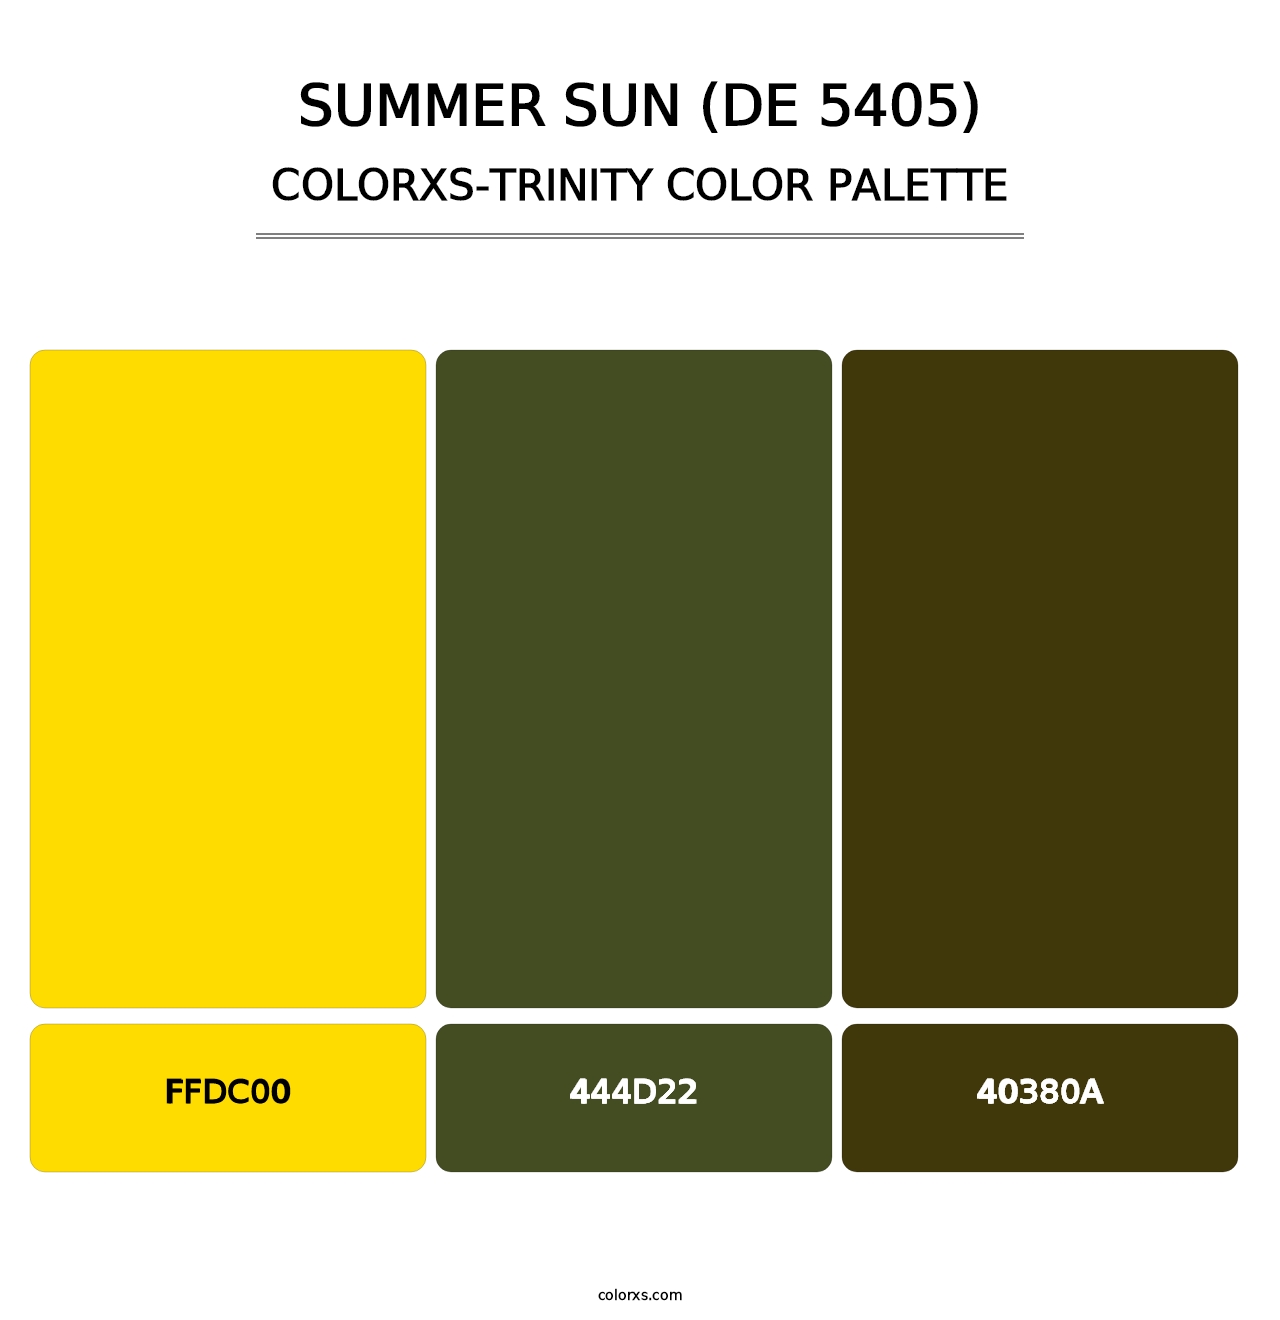 Summer Sun (DE 5405) - Colorxs Trinity Palette